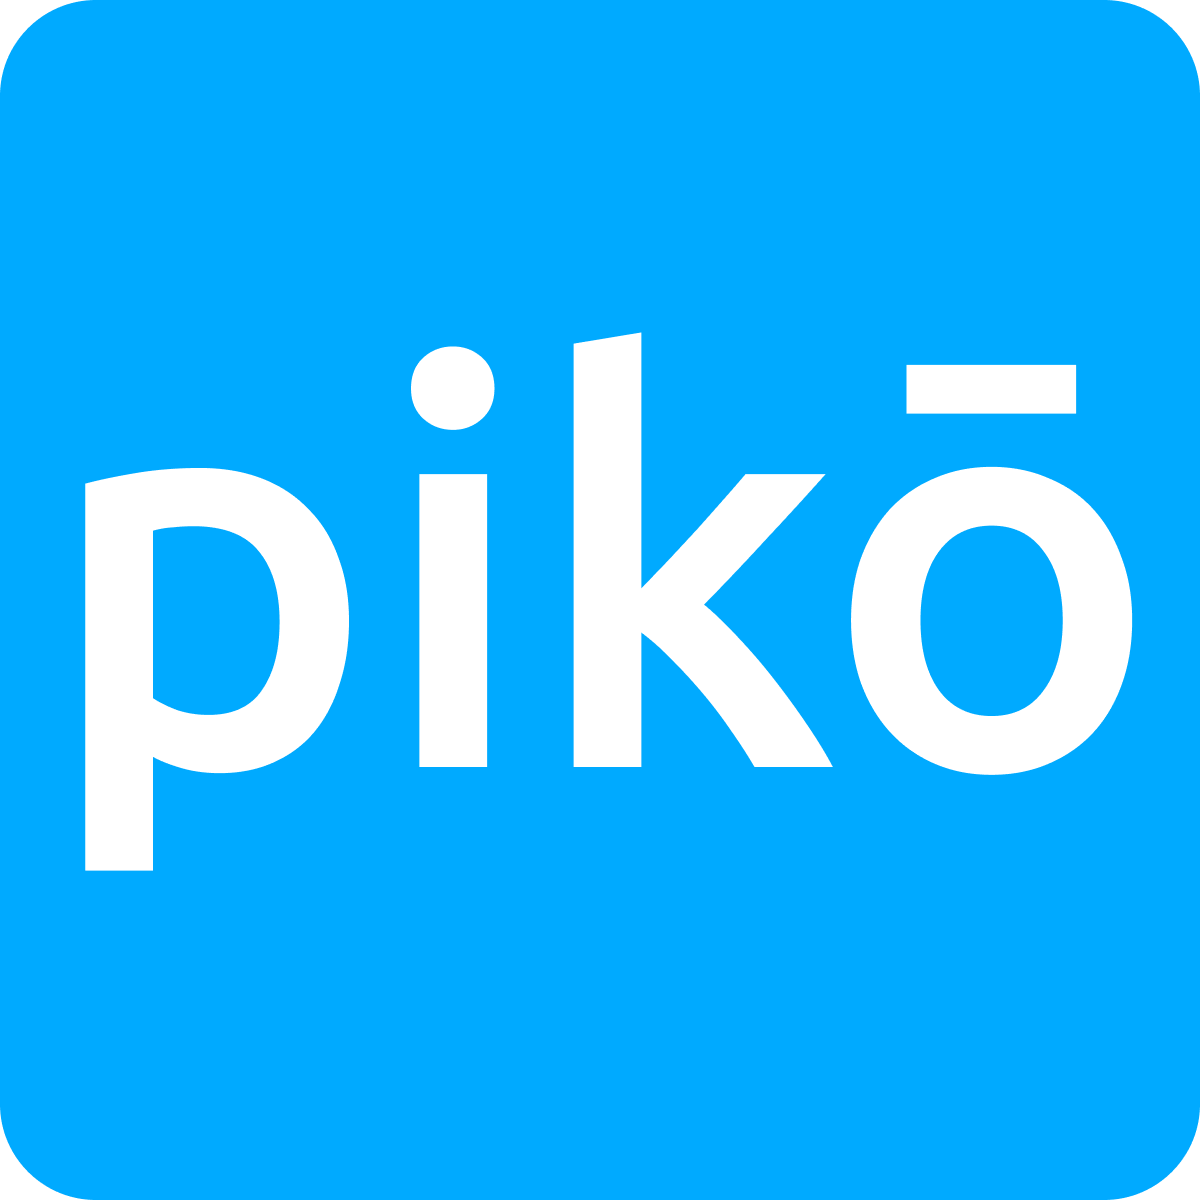 Piko logo